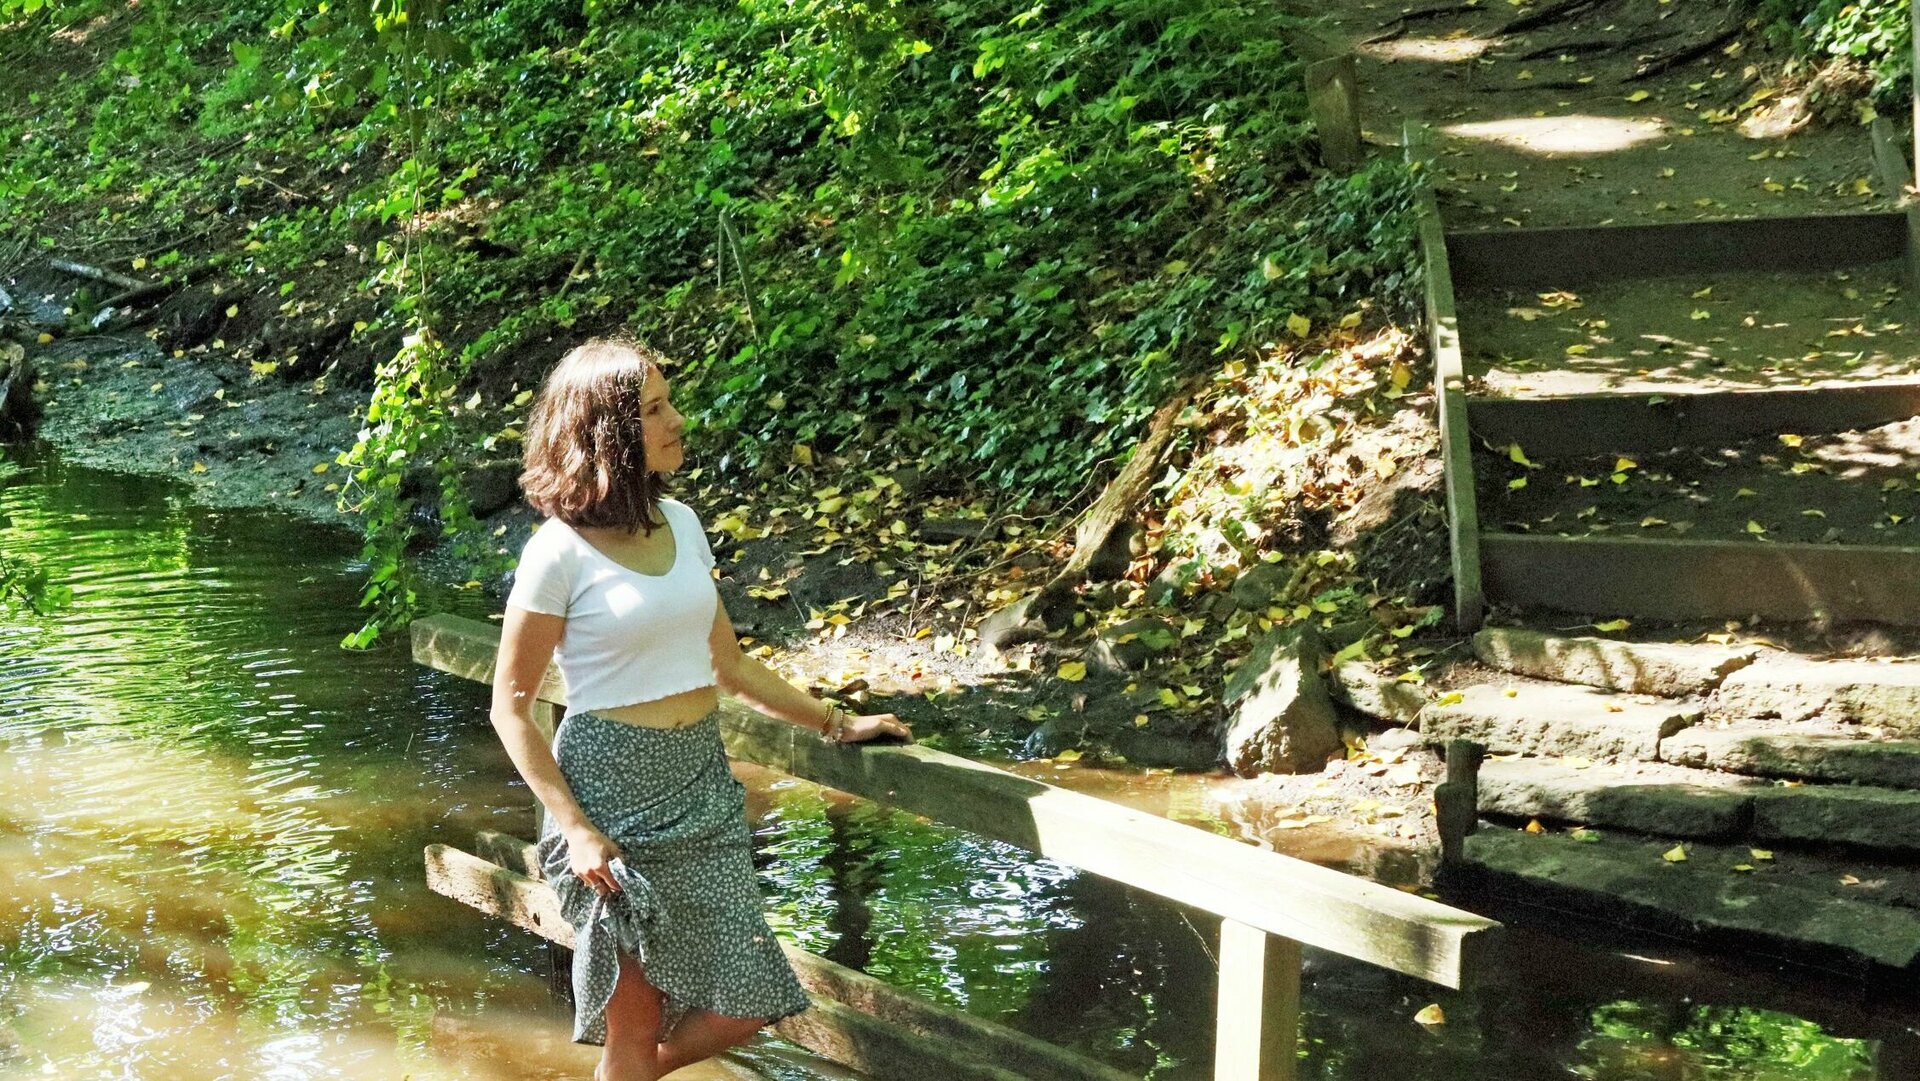 Eine junge Frau mit weißer Bluse und getupftem Rock steht barfuß im Wasser eines Baches, der zum 400-Wasser-Barfußpfad in Bad Bodenteich gehört.